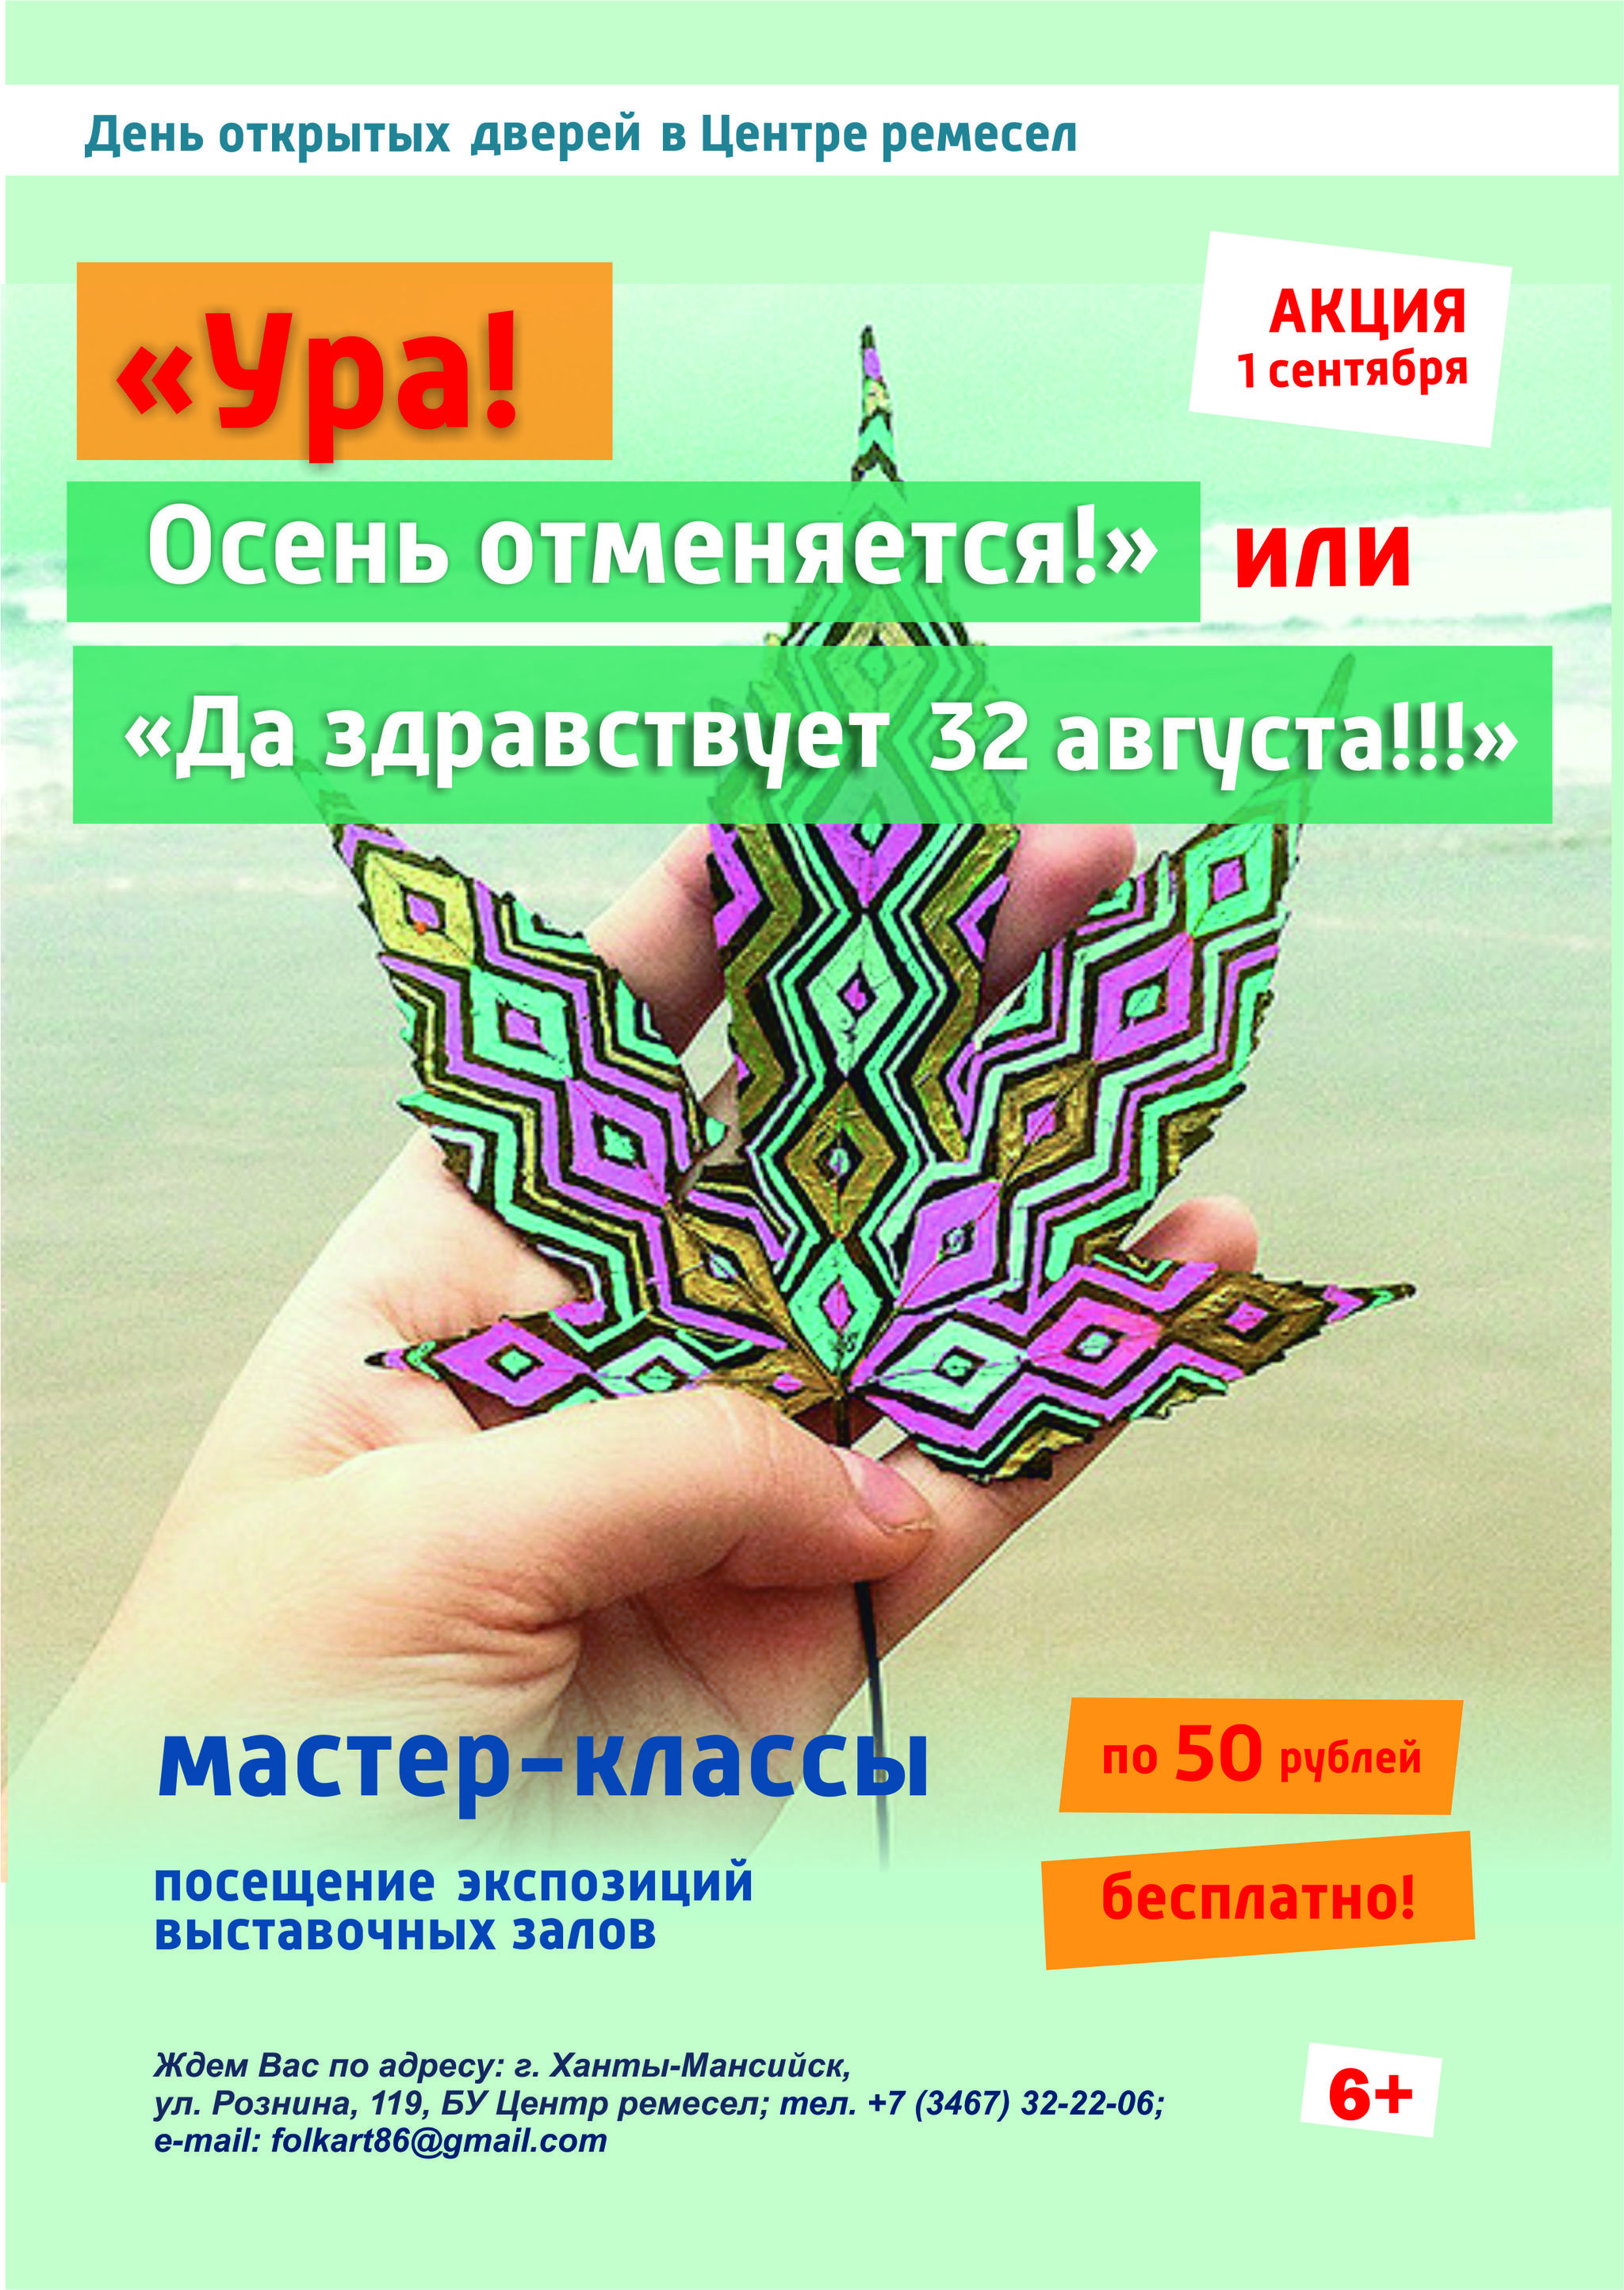 Центр ремесел Ханты-Мансийска объявляет День открытых дверей 